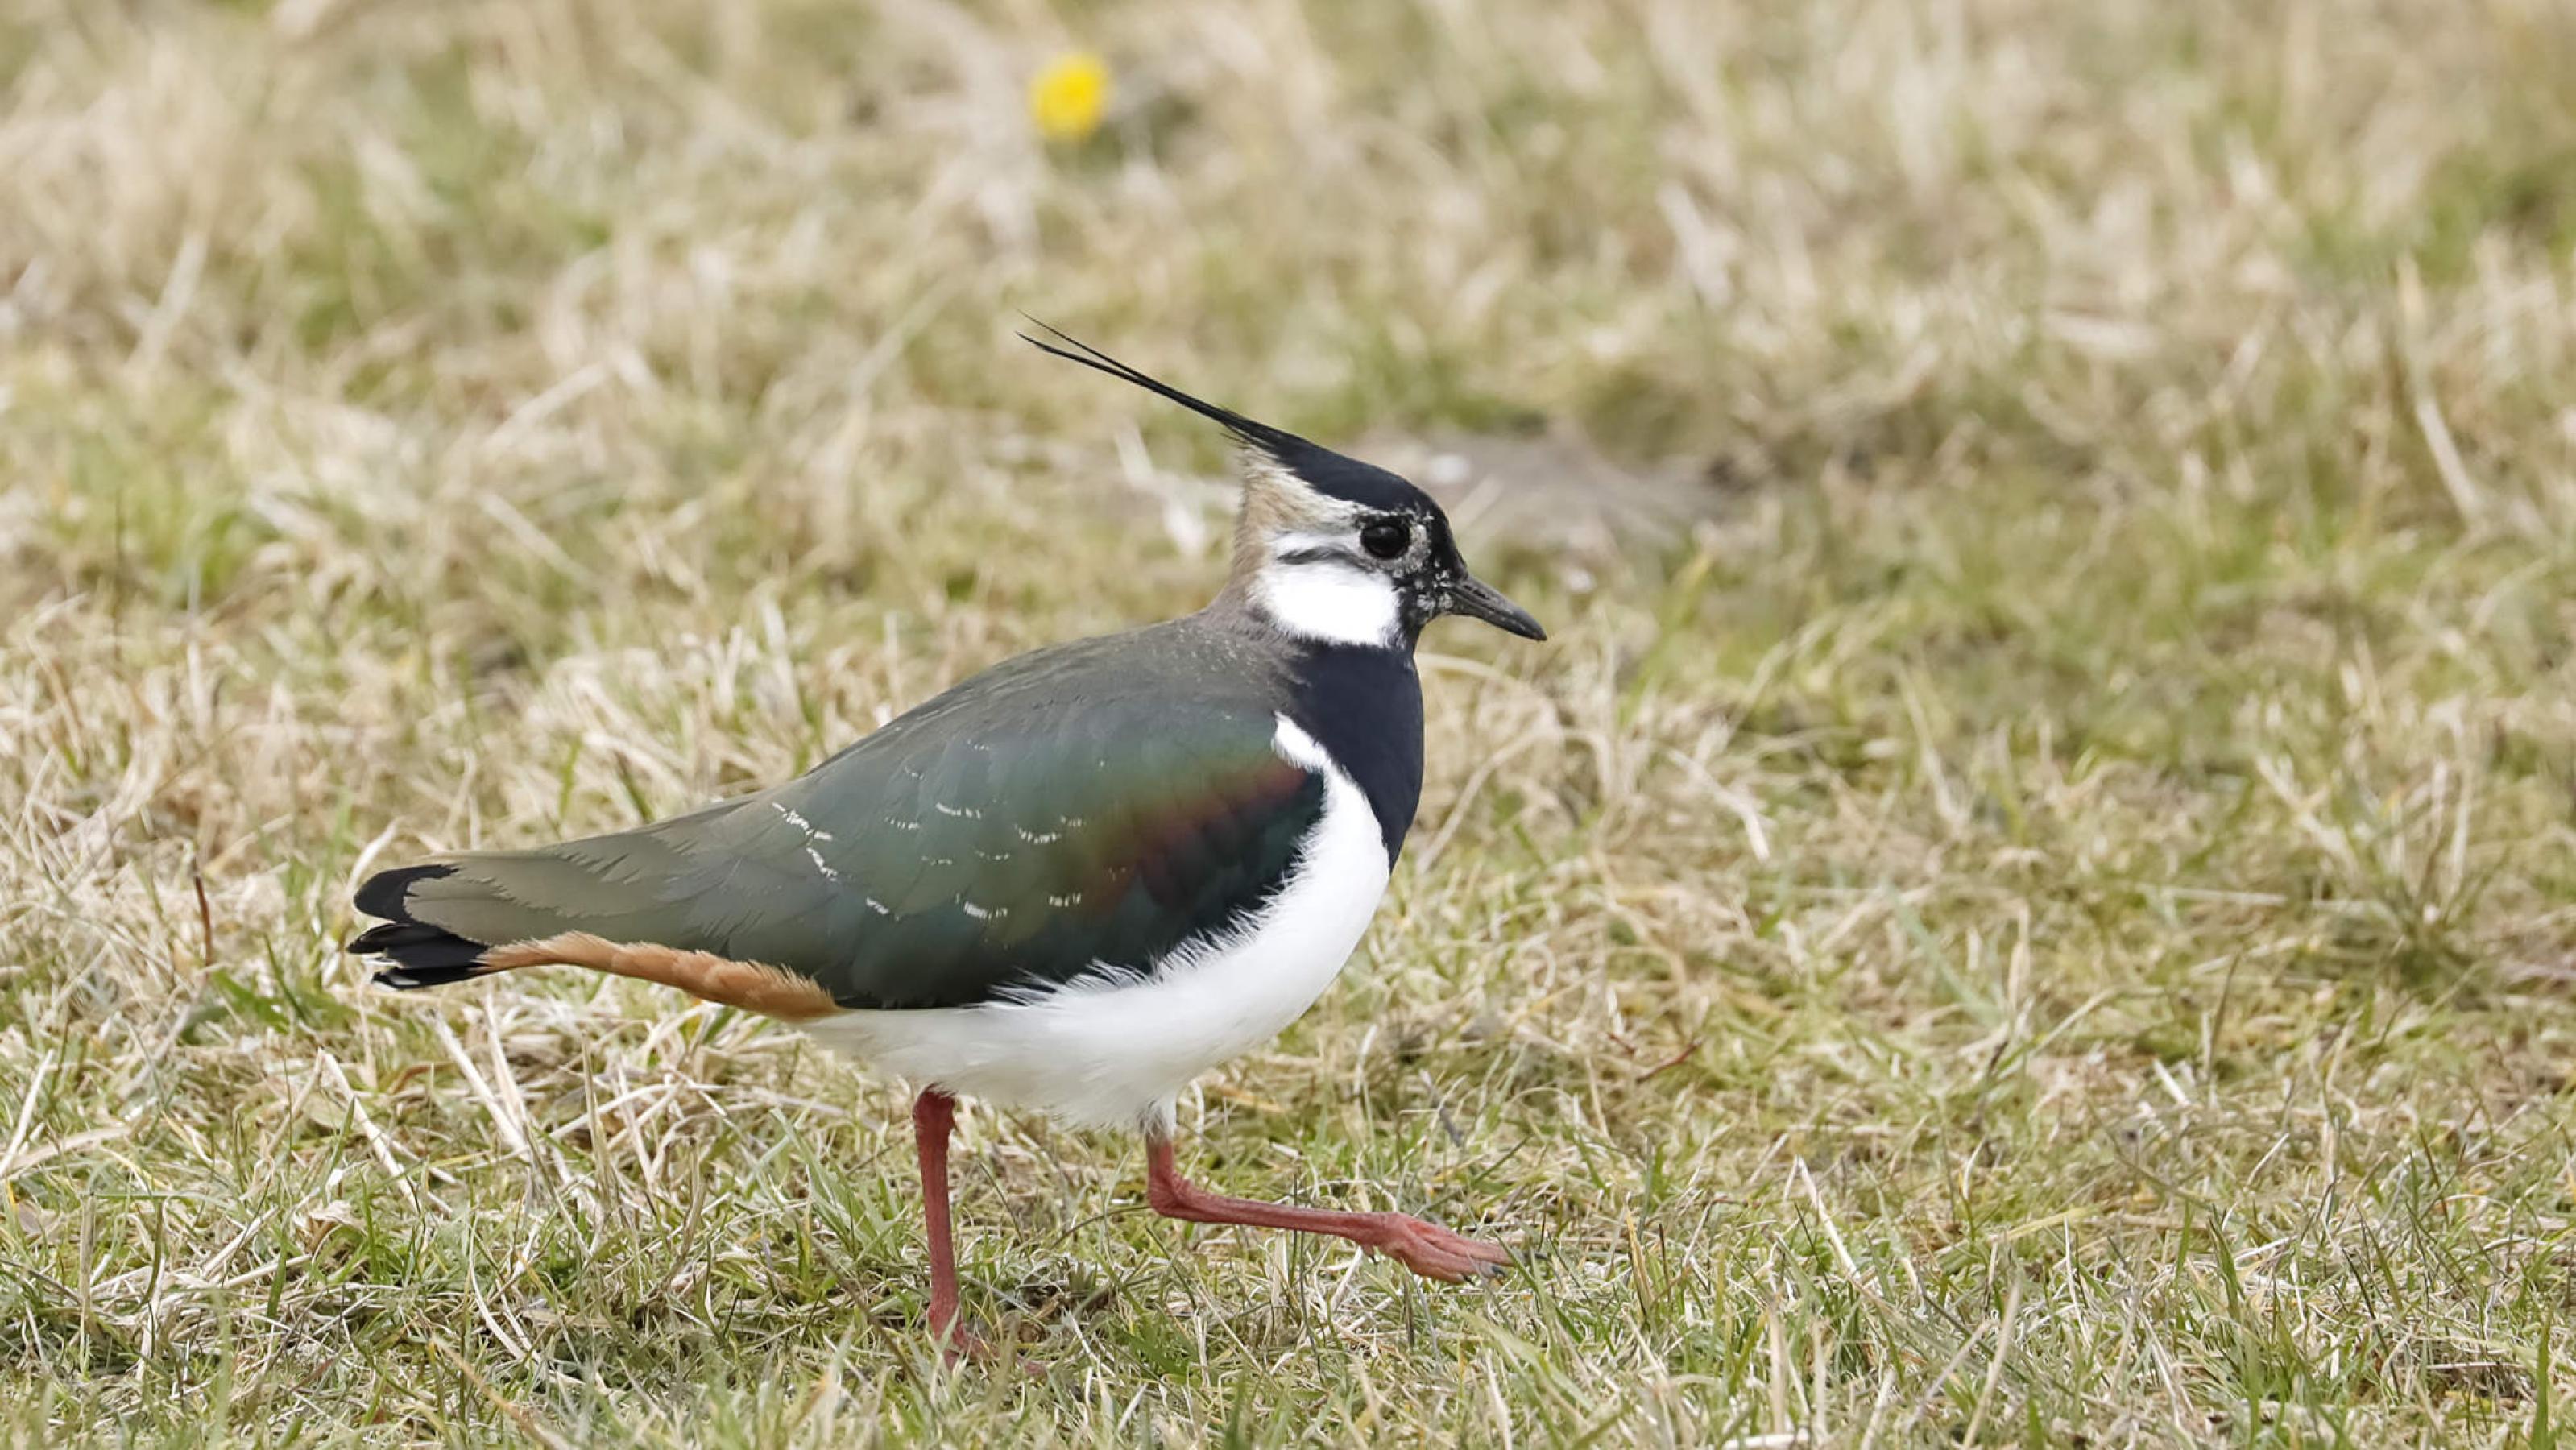 Ein Vogel mit schwarzer Kappe, weißer Brust, roten Beinen und grün-metallisch glänzendem Rückengefieder geht über trockenes Gras.